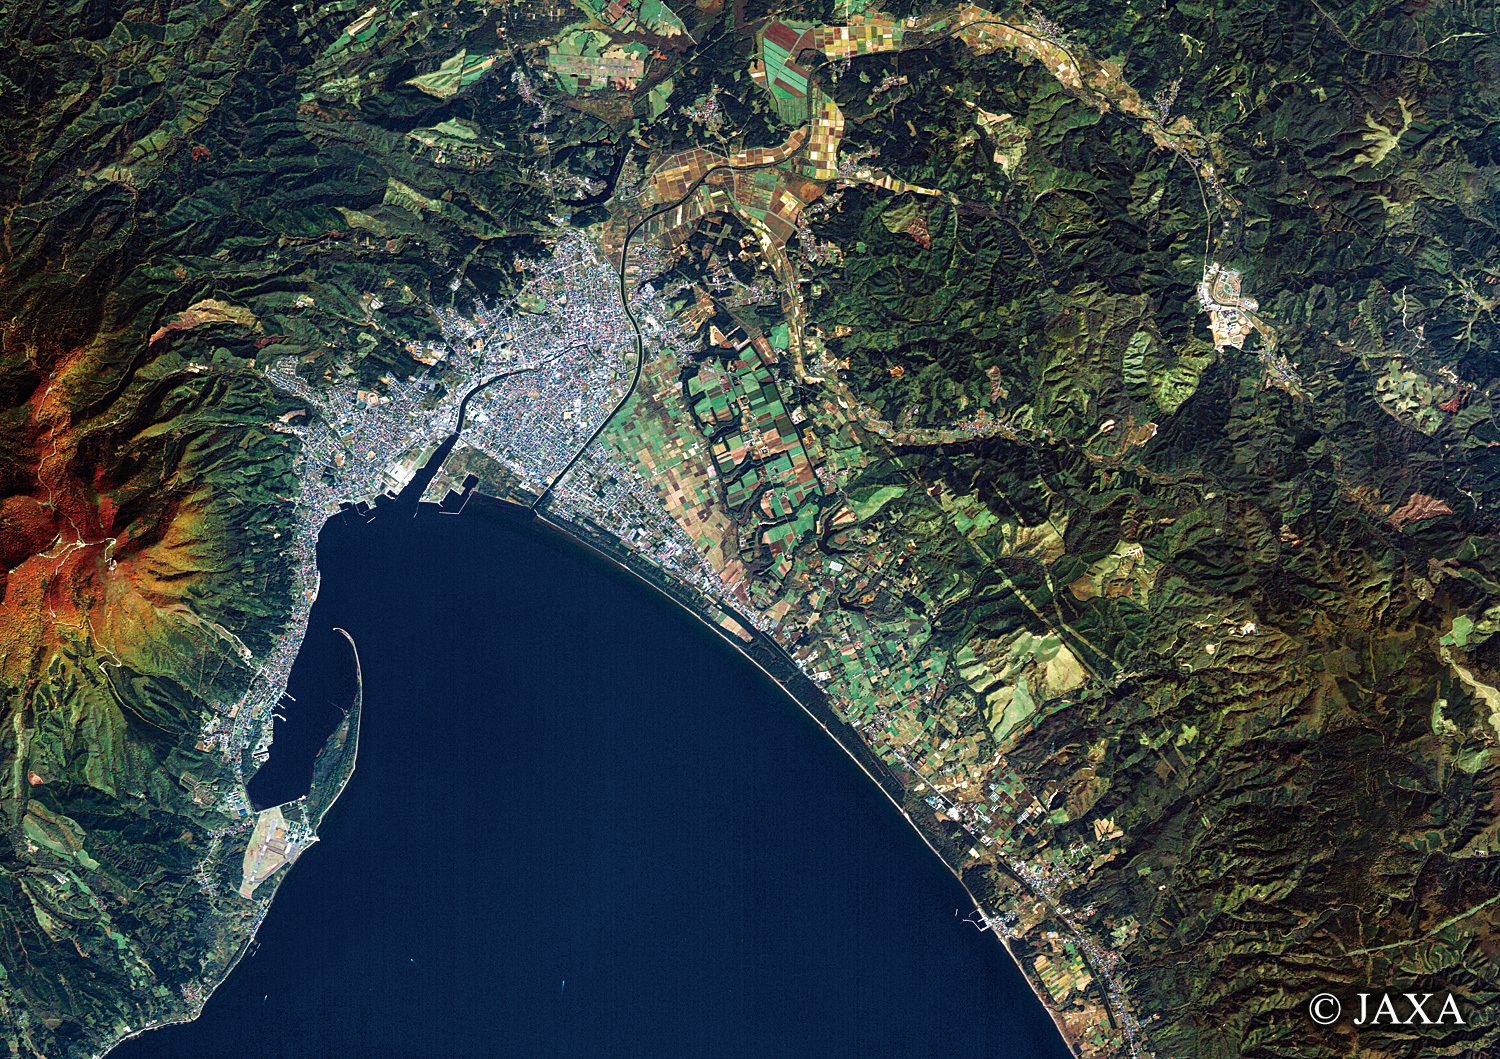 だいちから見た日本の都市 むつ市:衛星画像